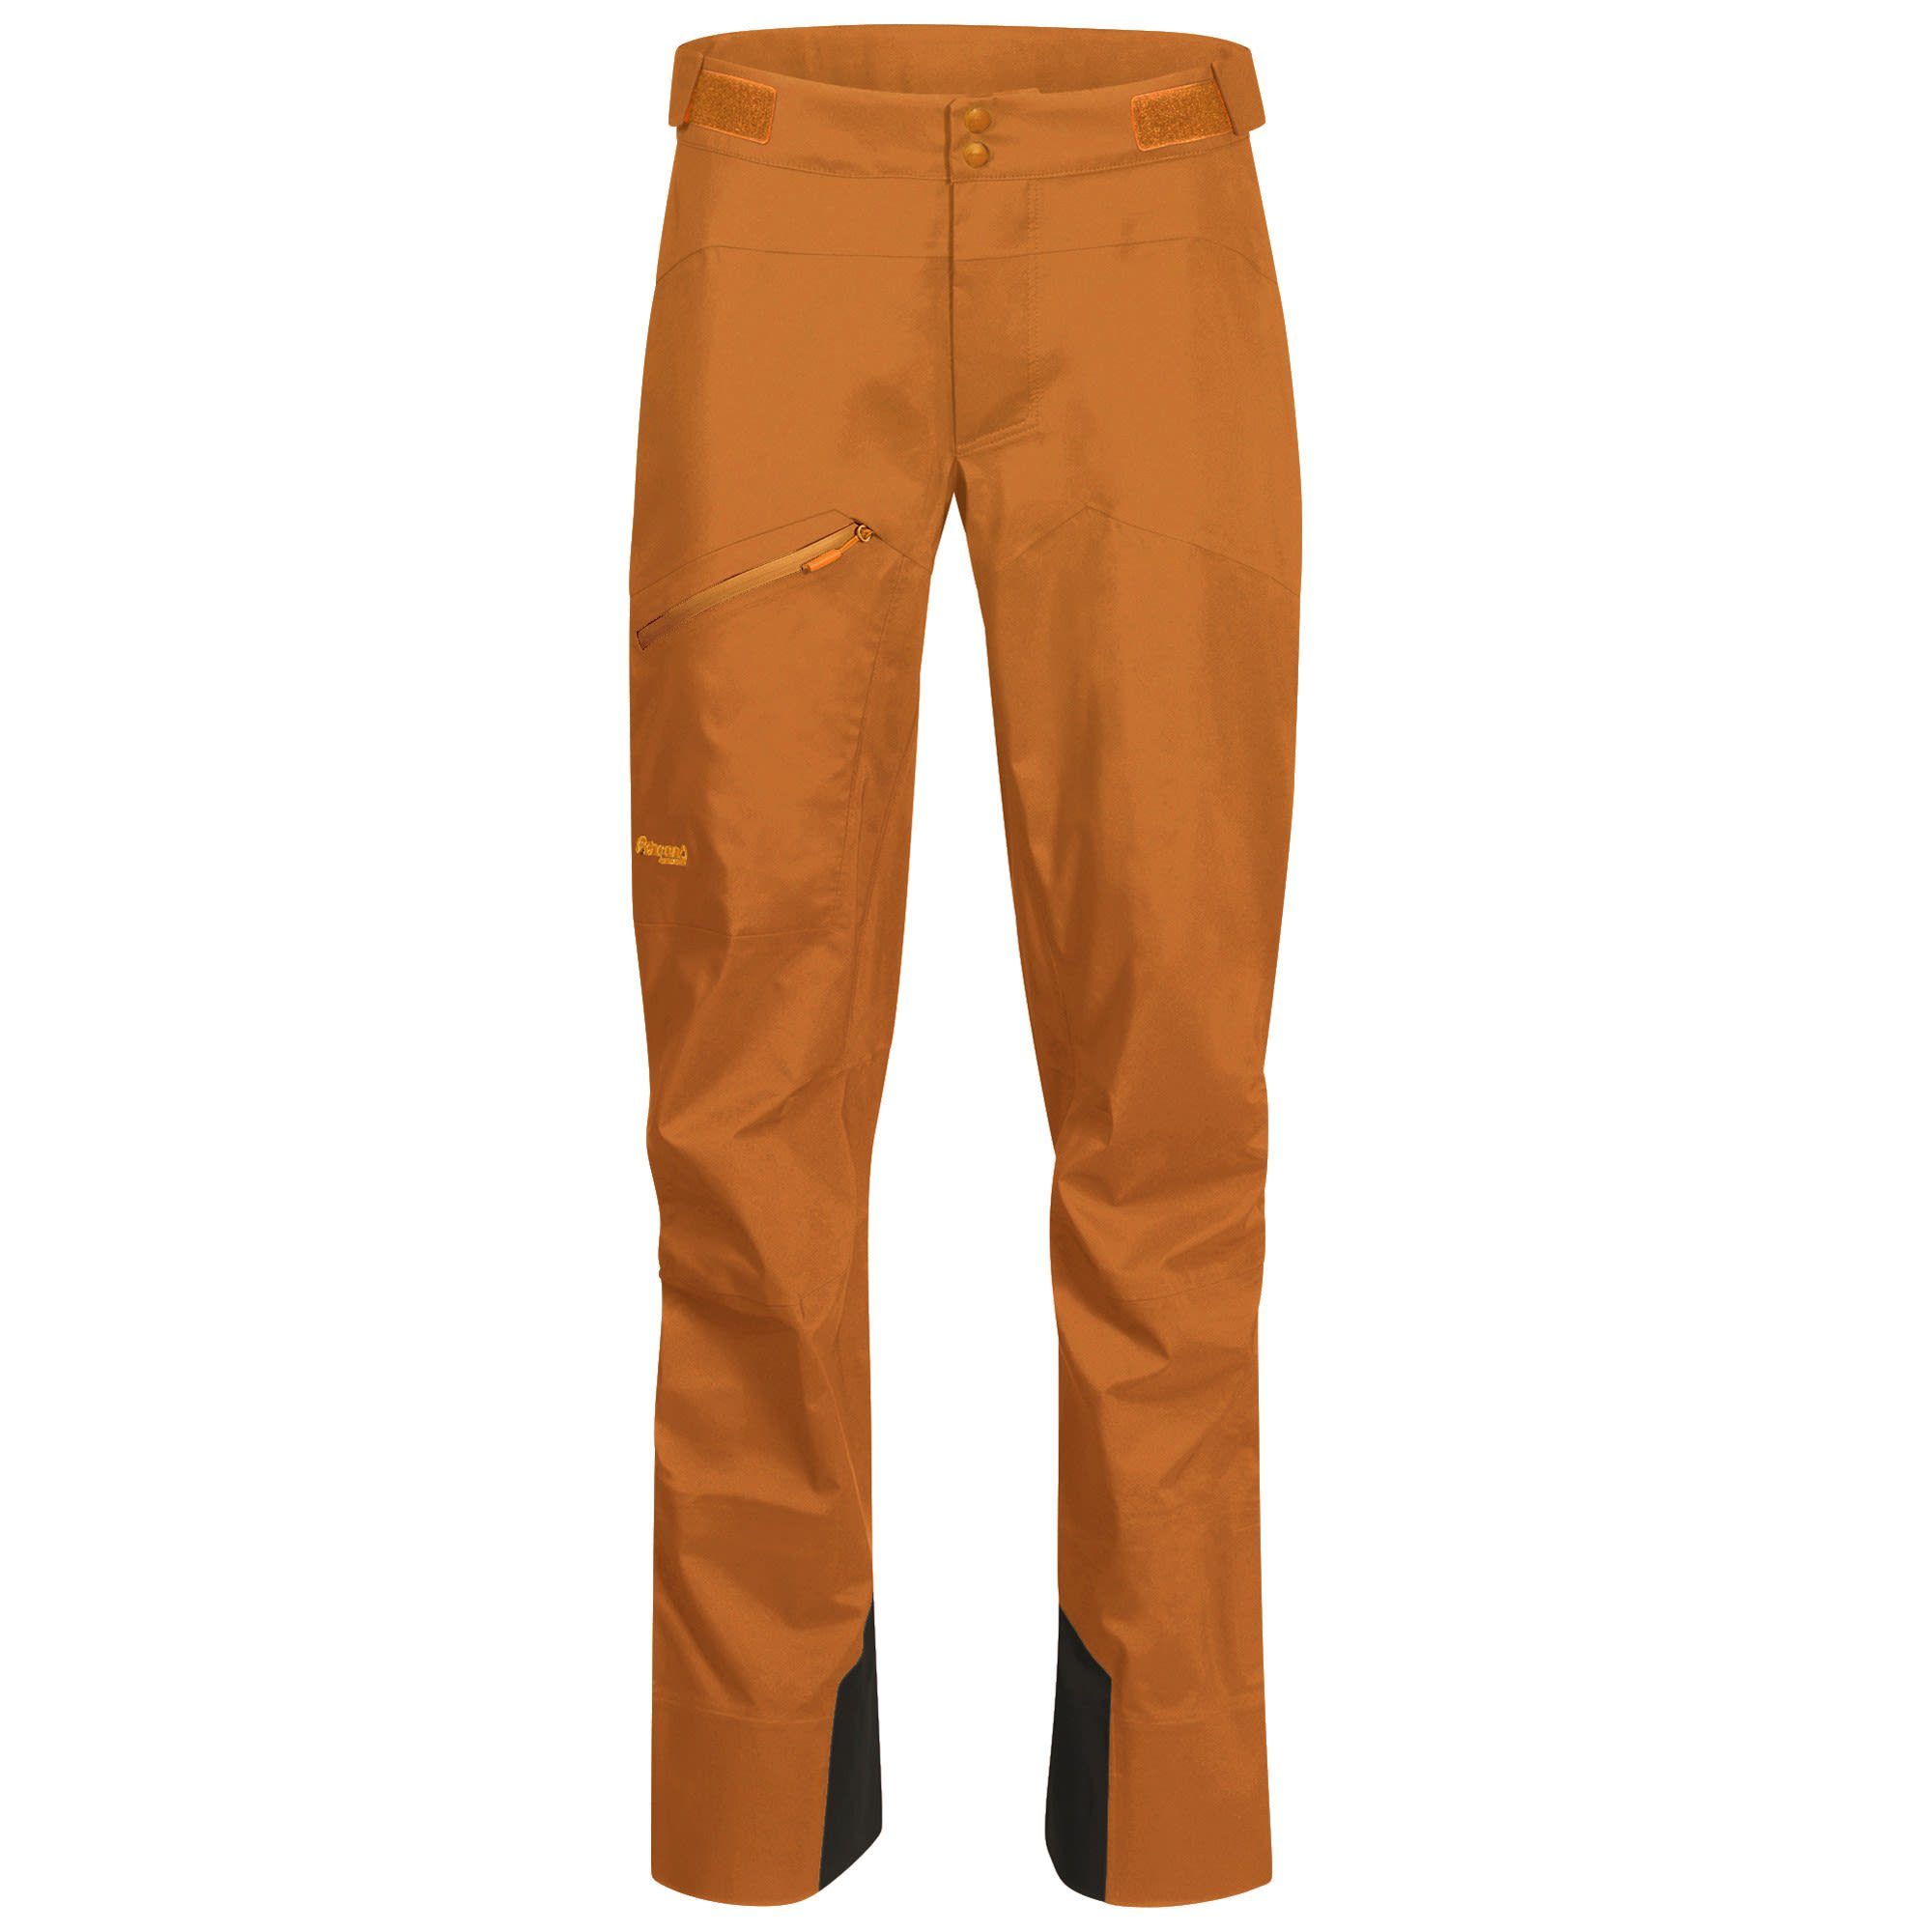 Cecilie Bergans Shorts 3l orange Hardshell-Hose Pants Damen & Hose Bergans